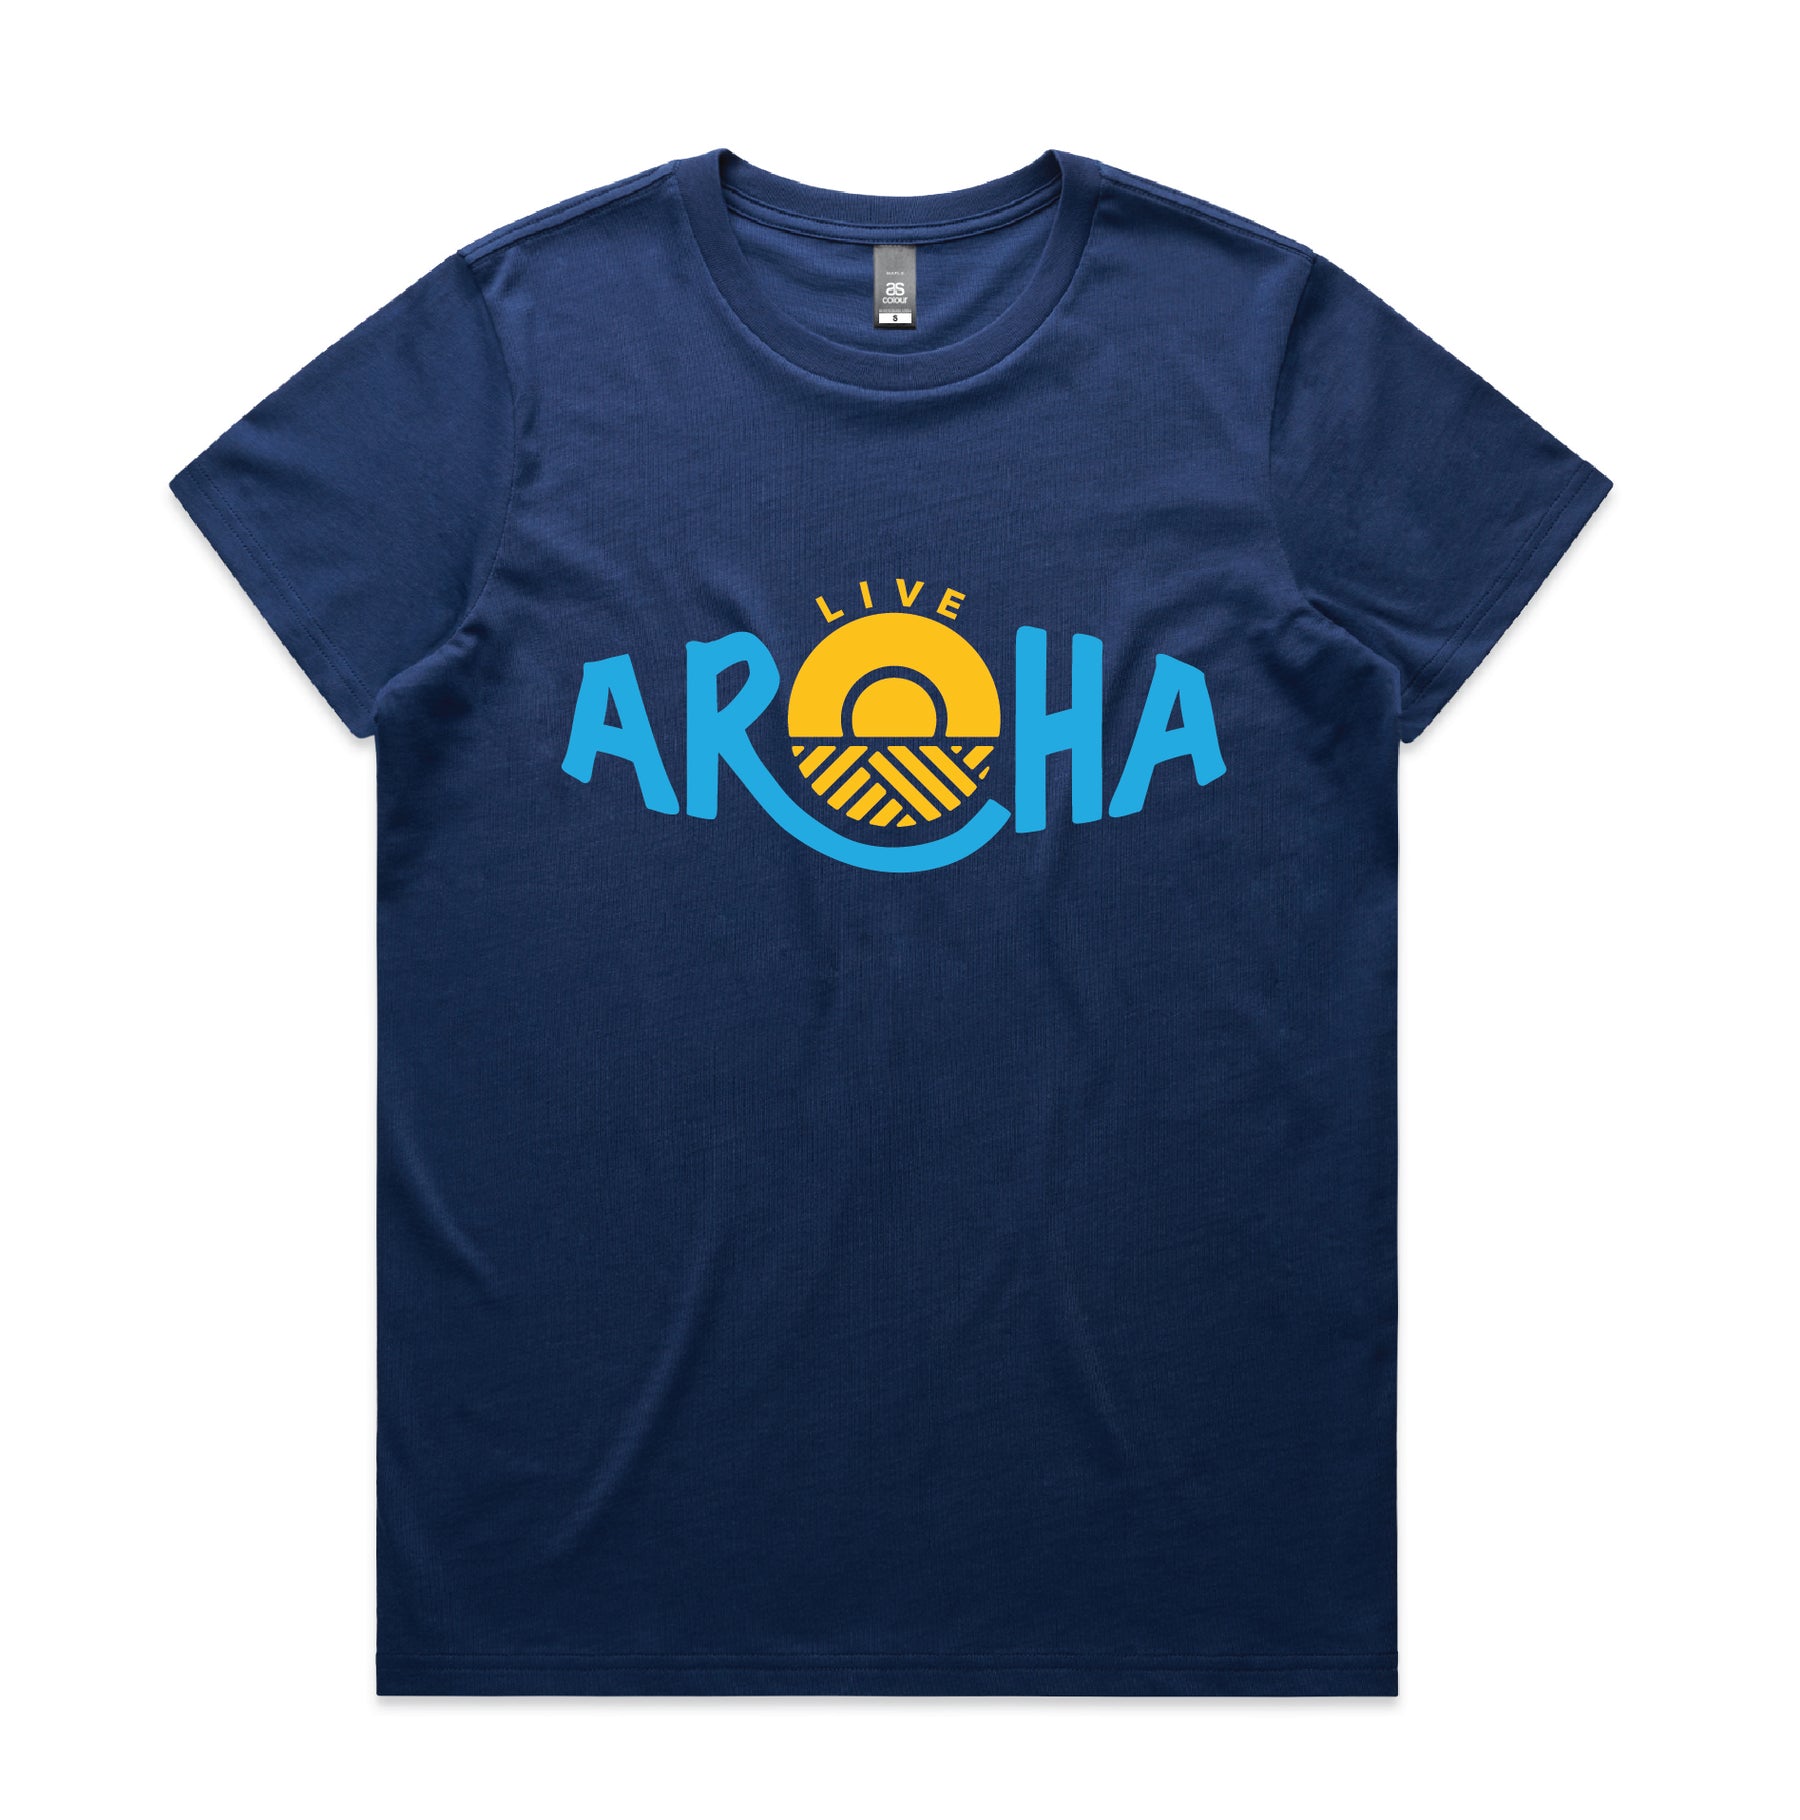 Live Aroha Womens Tee Shirt